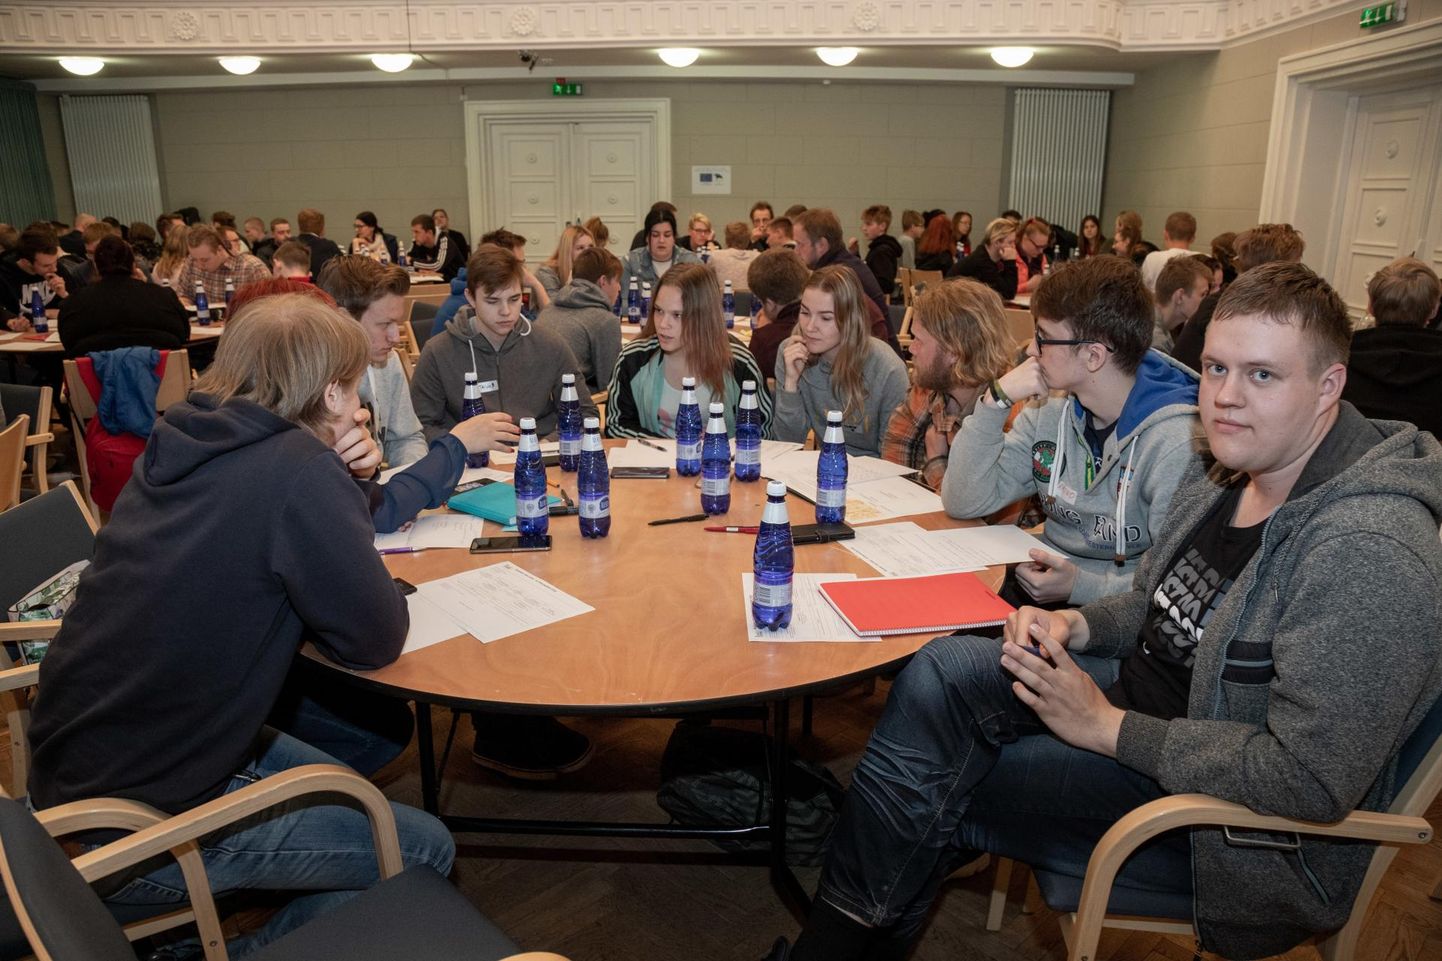 Neljapäeval mõtlesid Viljandi kutseõppekeskuse õpilased välja ja panid kirja oma ettevõtlusideed, et sügisest hakata neid teostama.